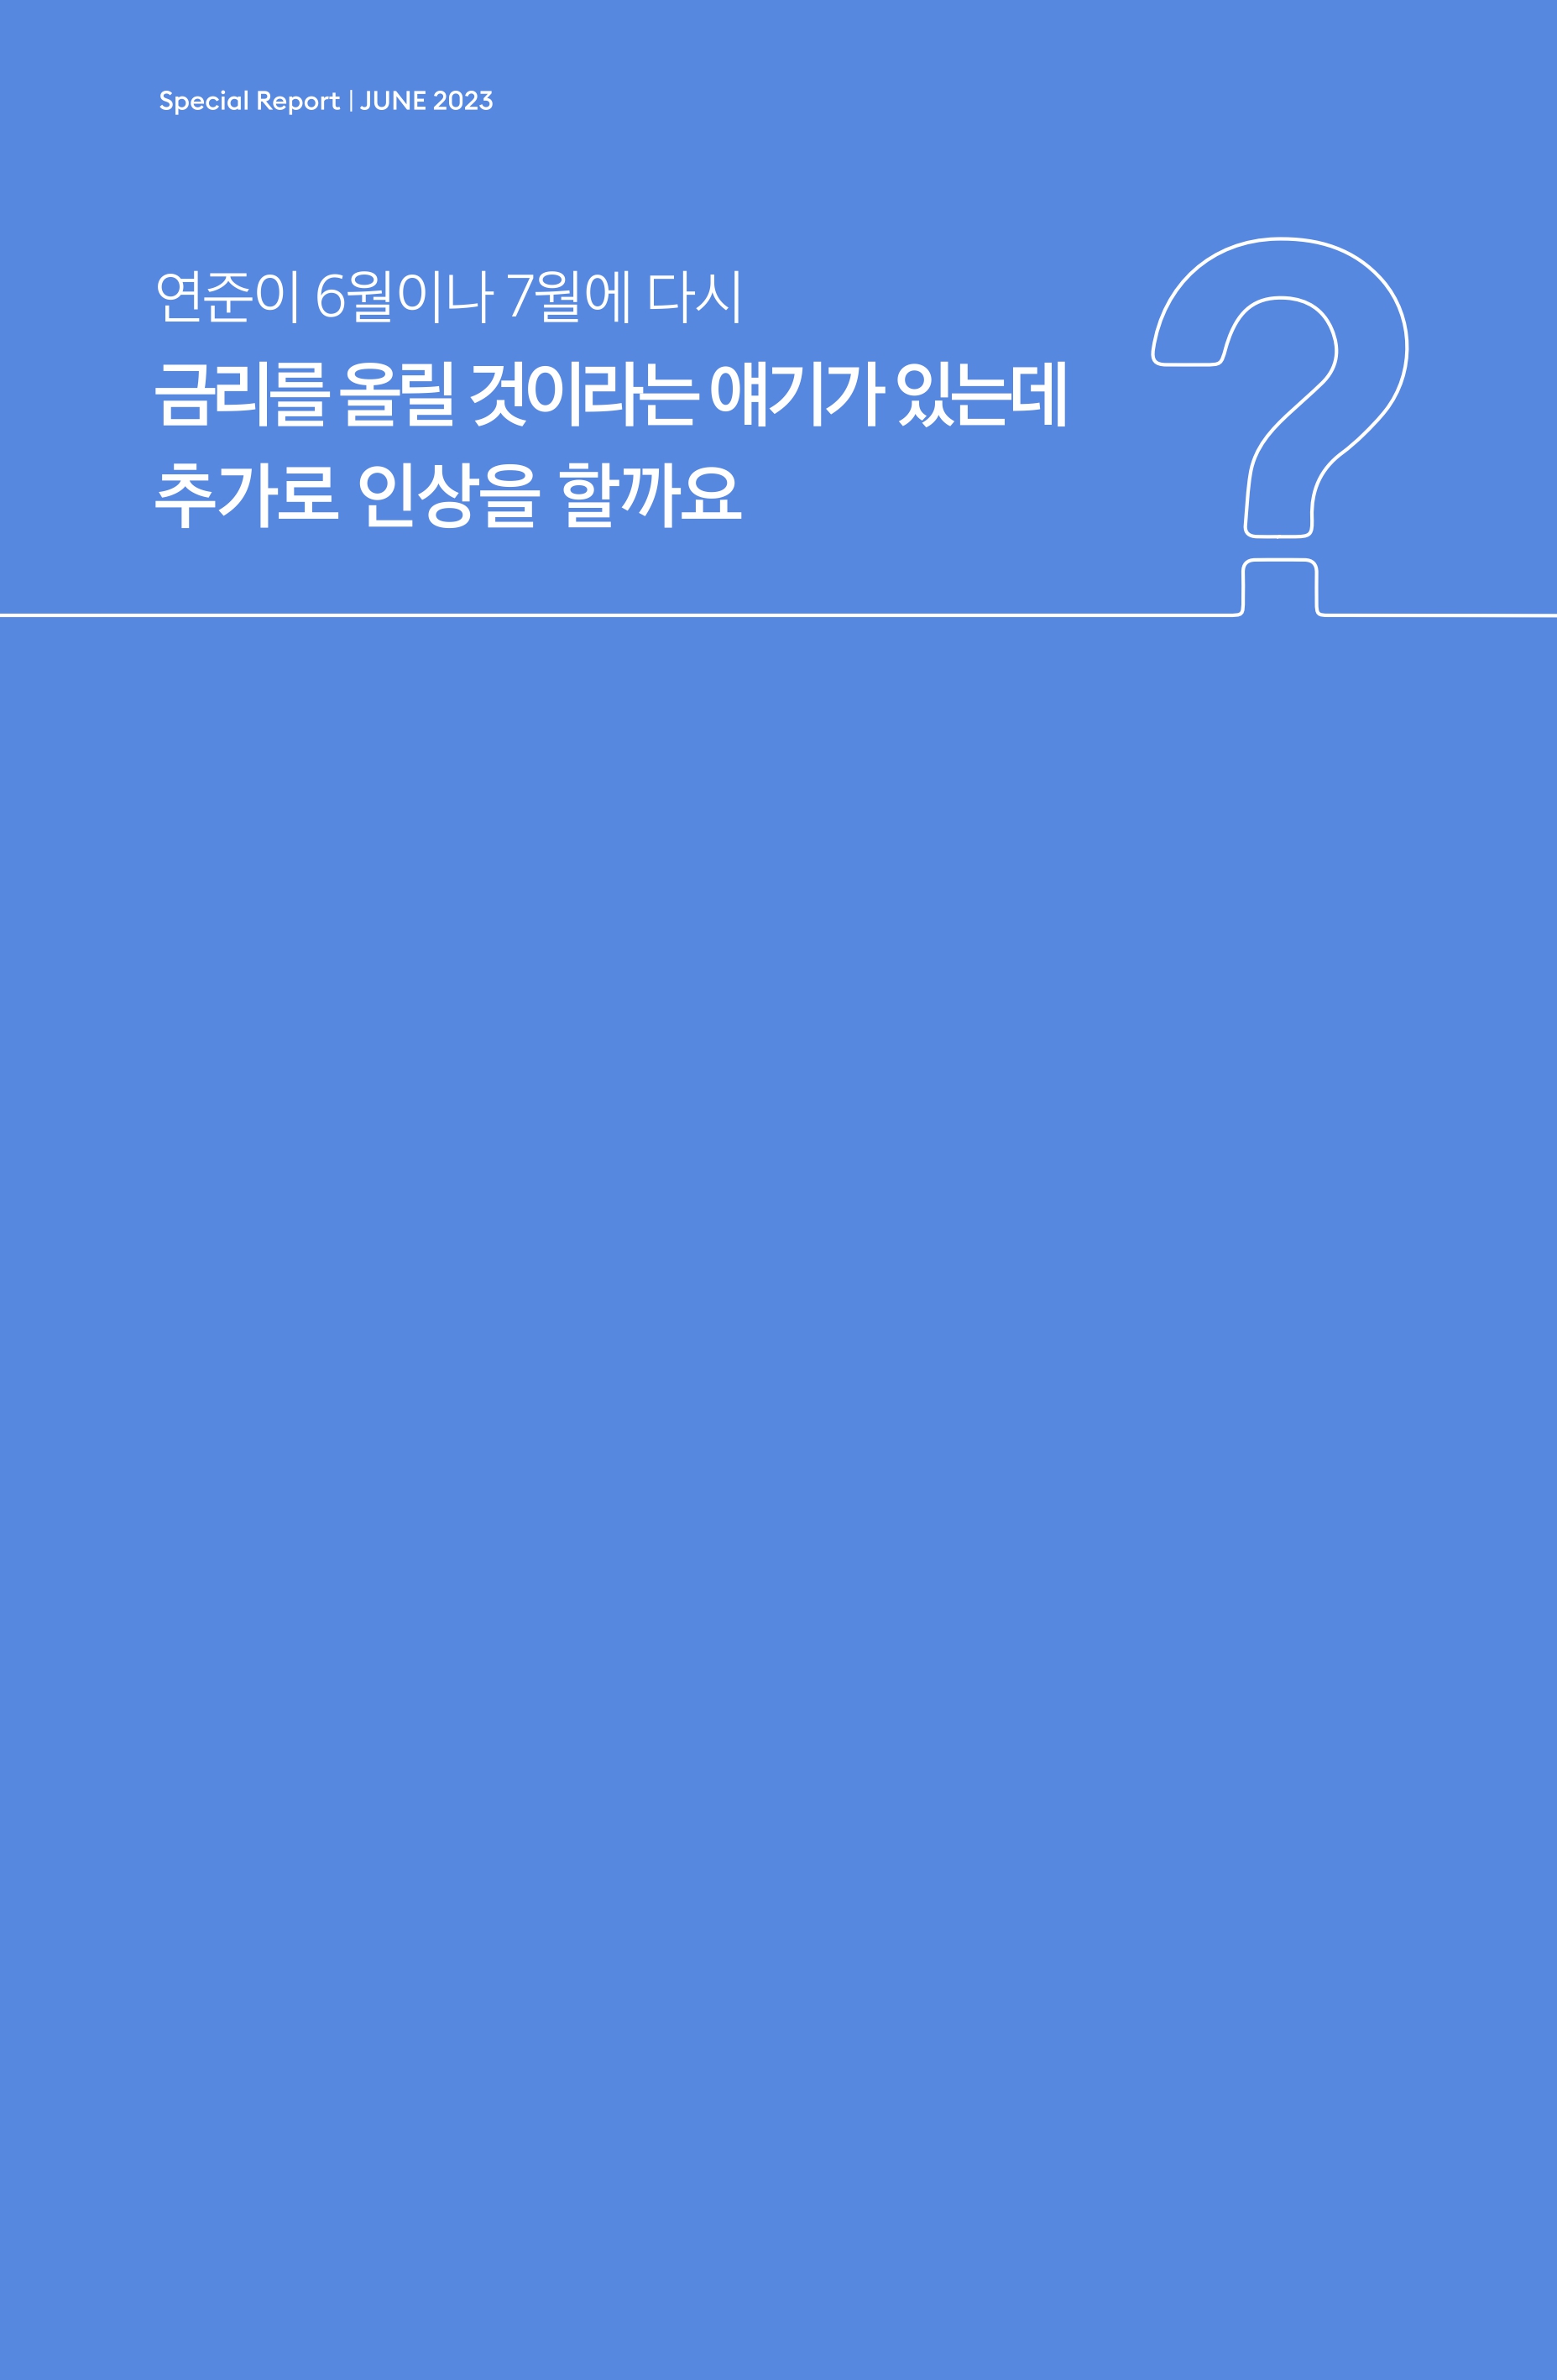 Samsung Global Market Outlook(낱장)_202306_page-0003.jpg